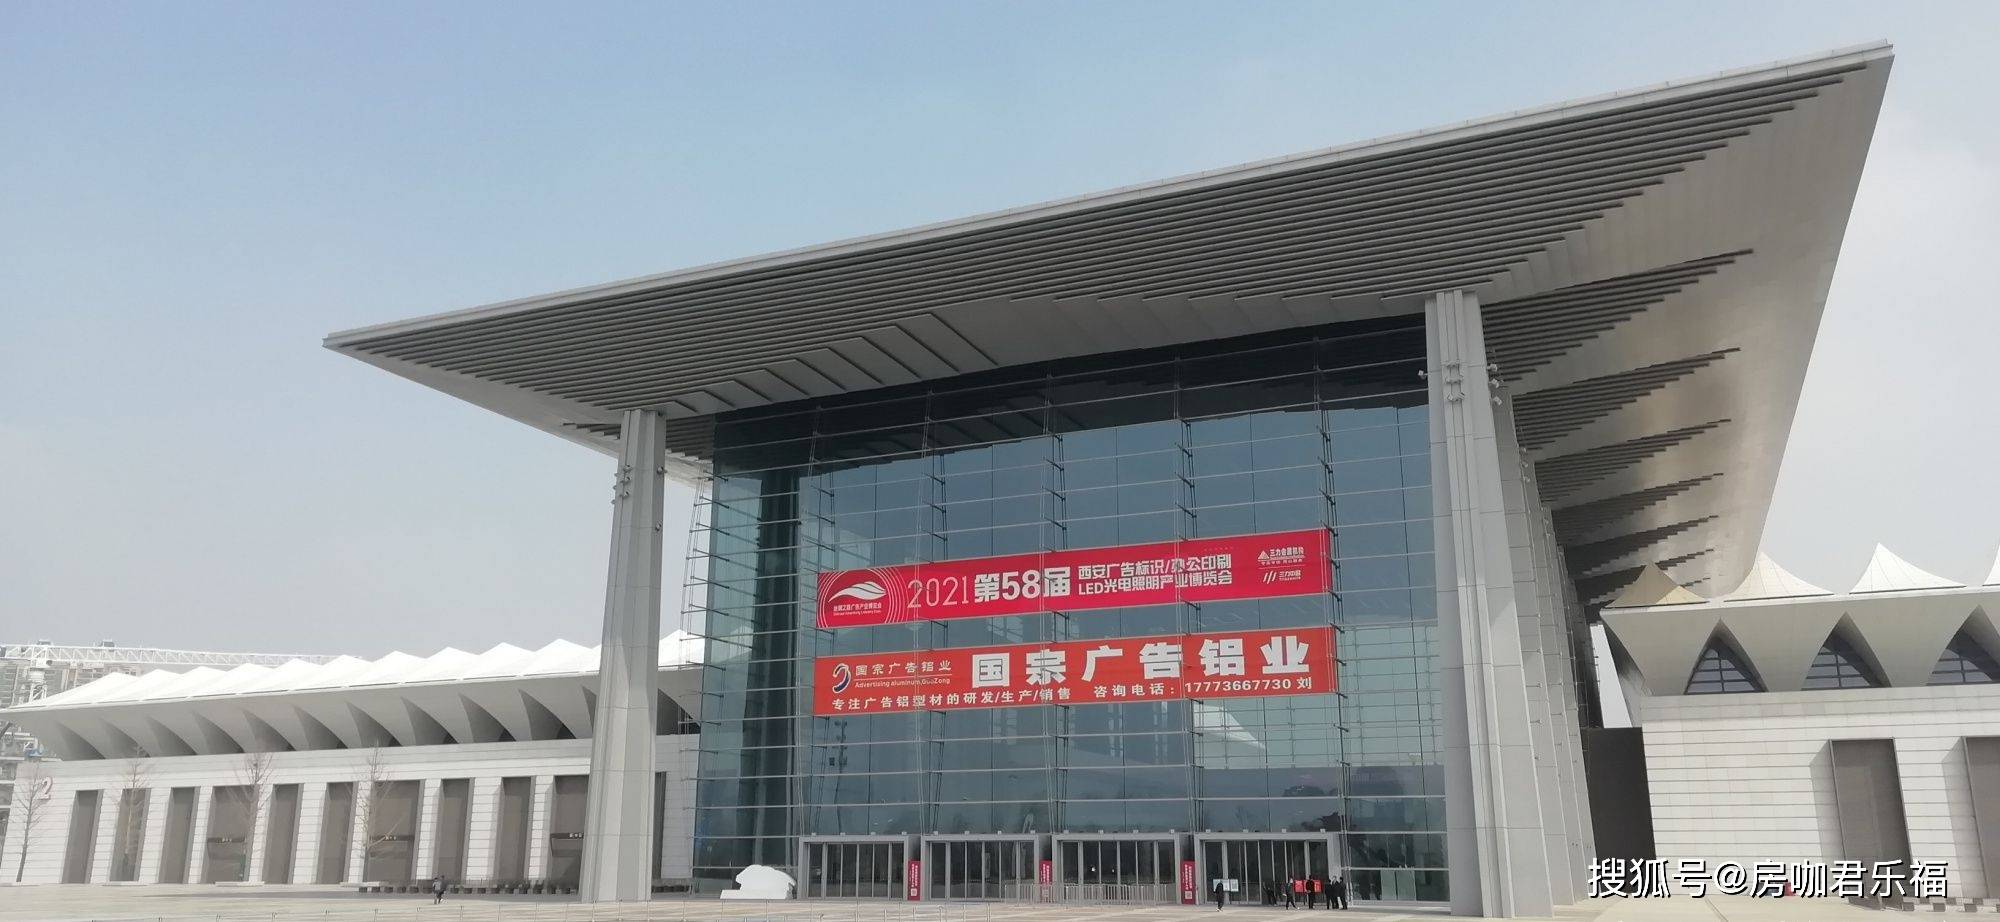 中国西安书画艺术展览会开始举办,一直持续到3月21日